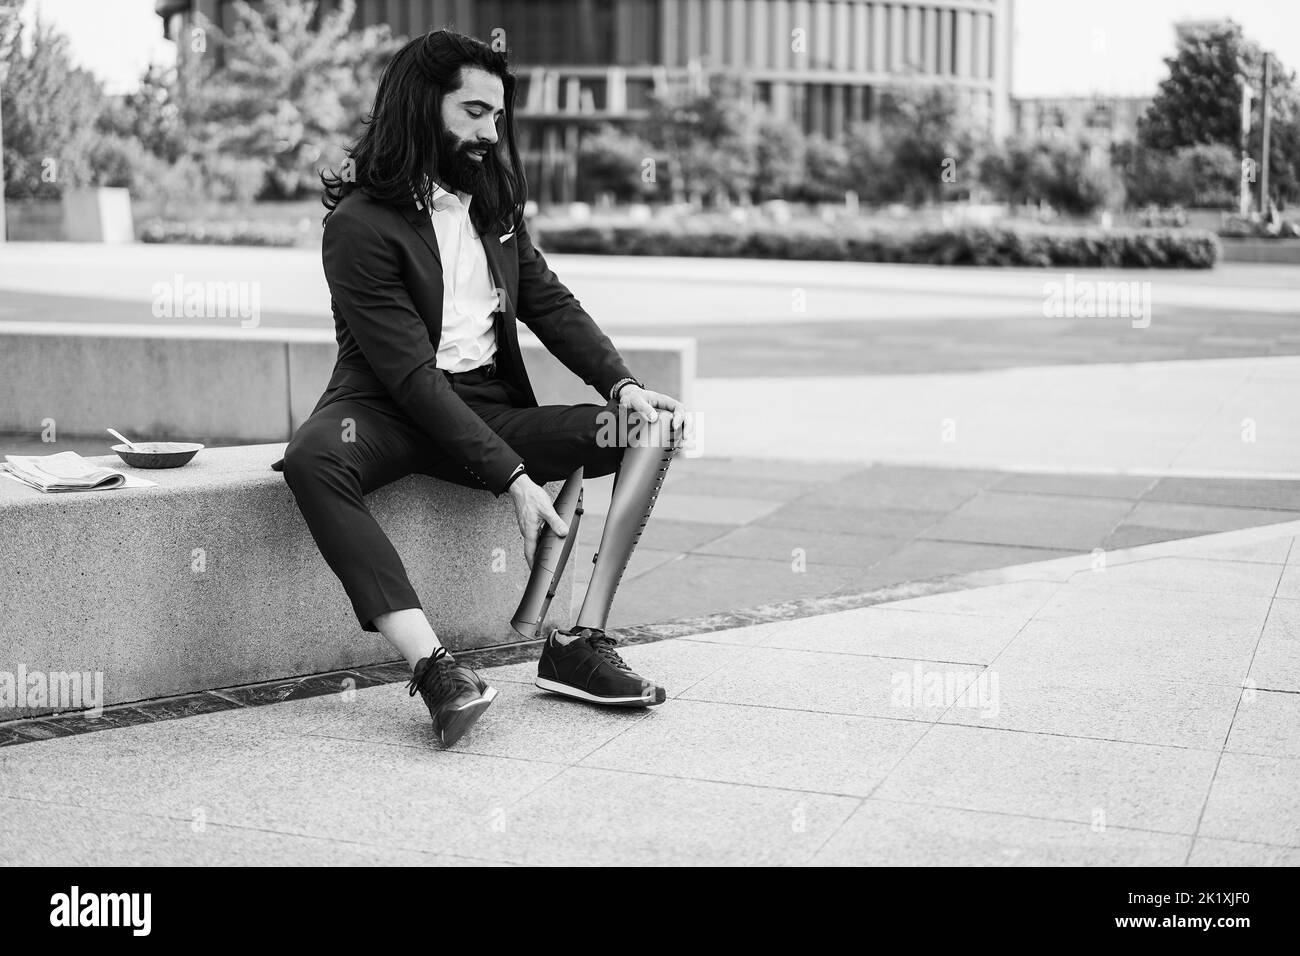 Geschäftsmann, der sein prothetisches Bein im Freien vom Bürogebäude aus anpasst - Fokus auf Hände, die Prothesen halten - Schwarz-Weiß-Schnitt Stockfoto